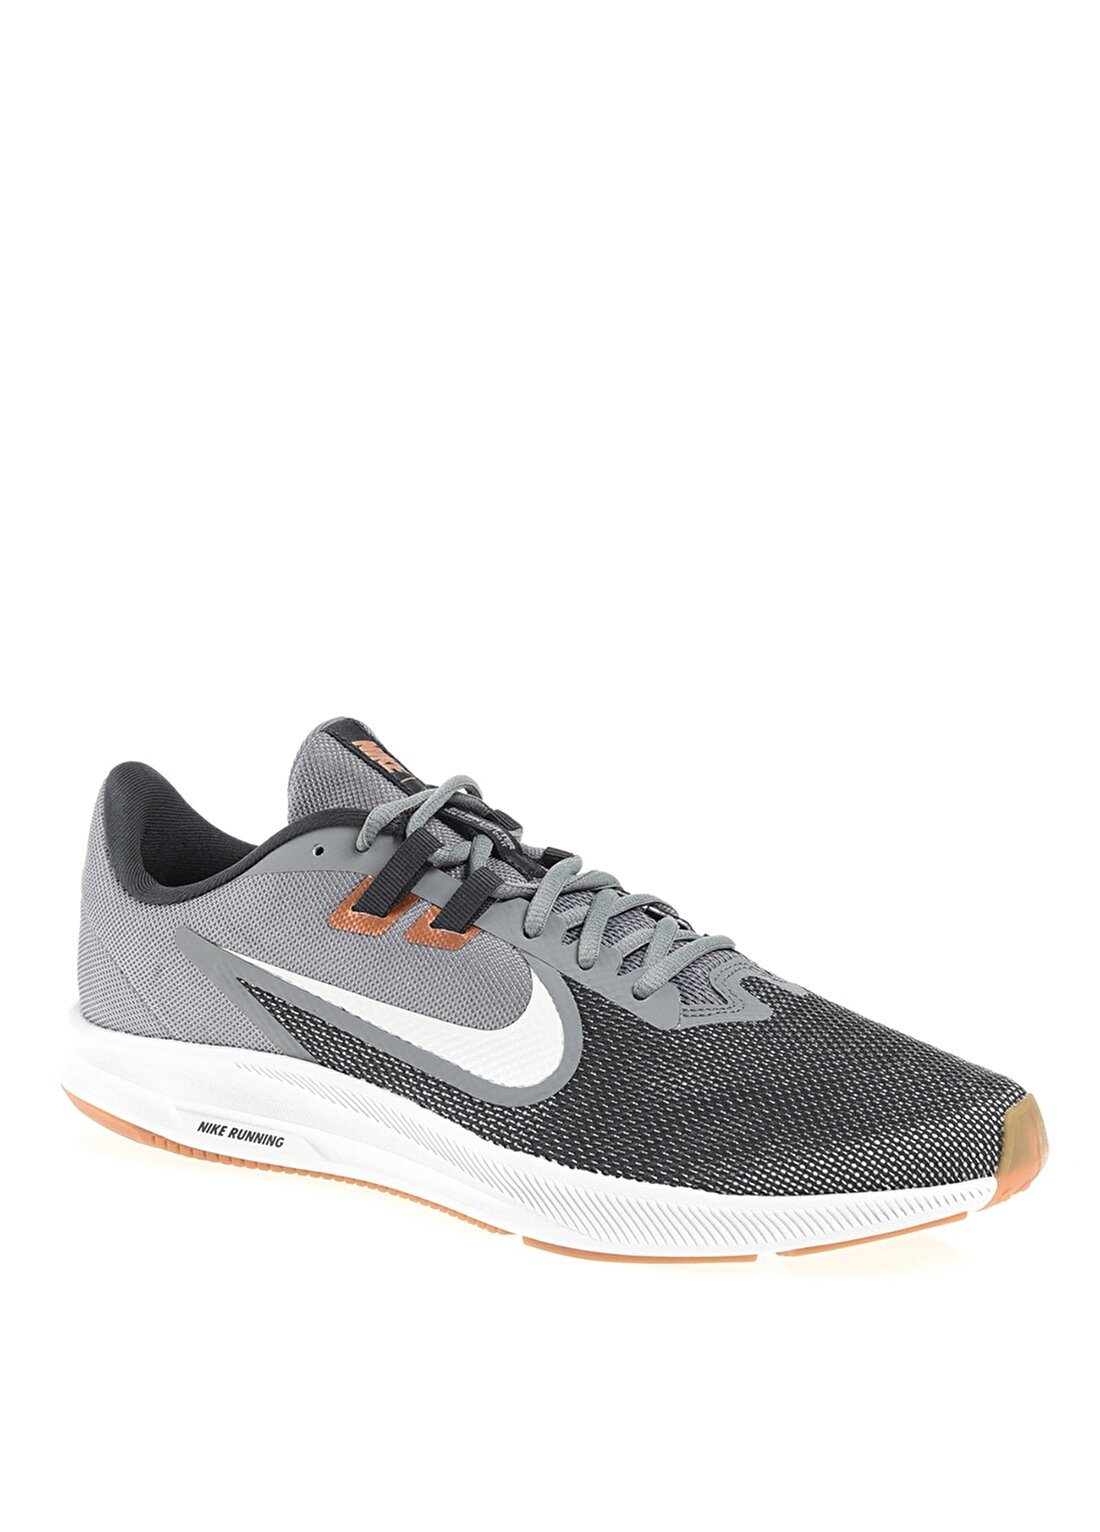 Nike Downshifter 9 Erkek Koşu Ayakkabısı